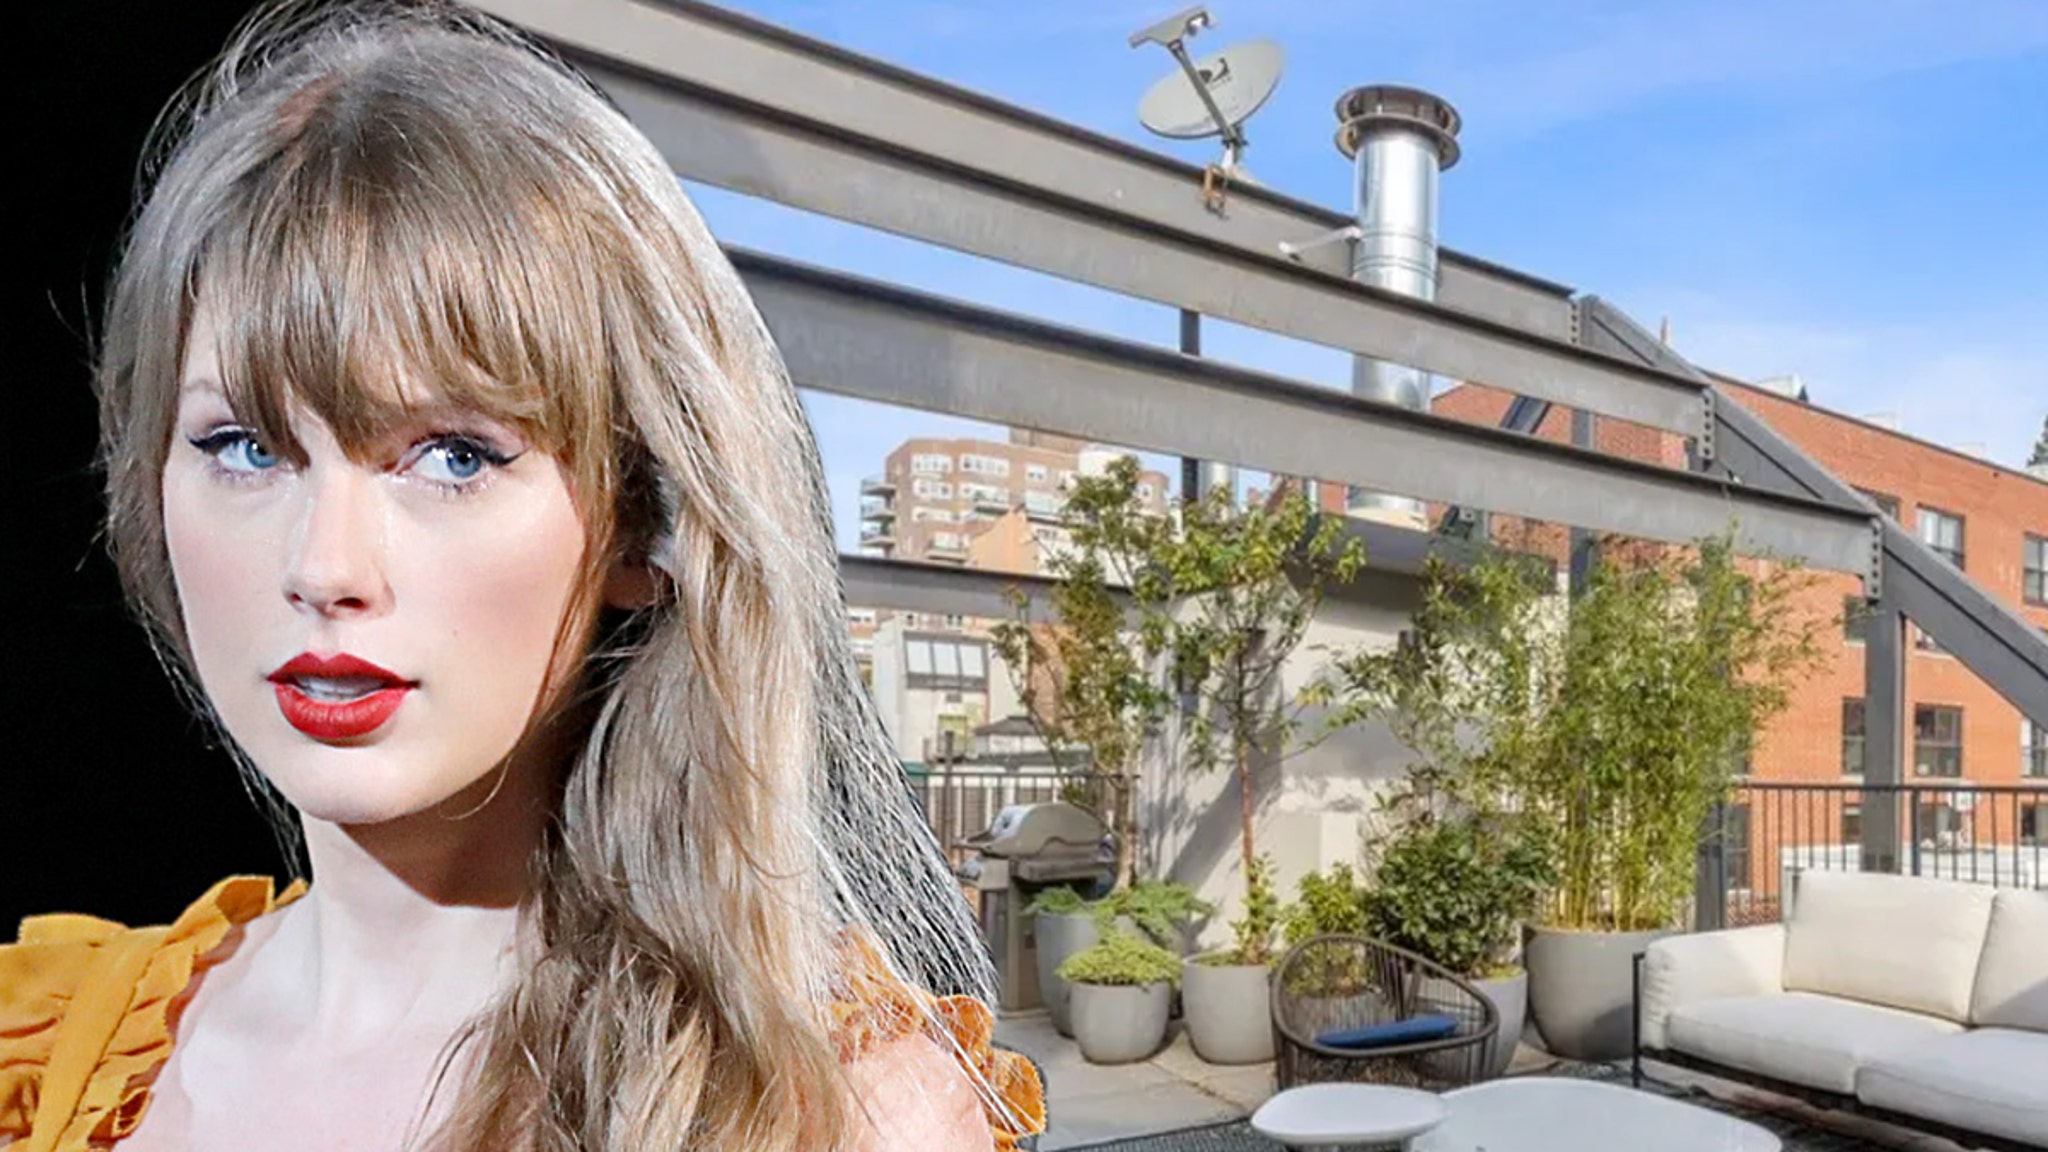 Het ‘Cornelia Street’ van Taylor Swift in een herenhuis in New York staat nu te koop